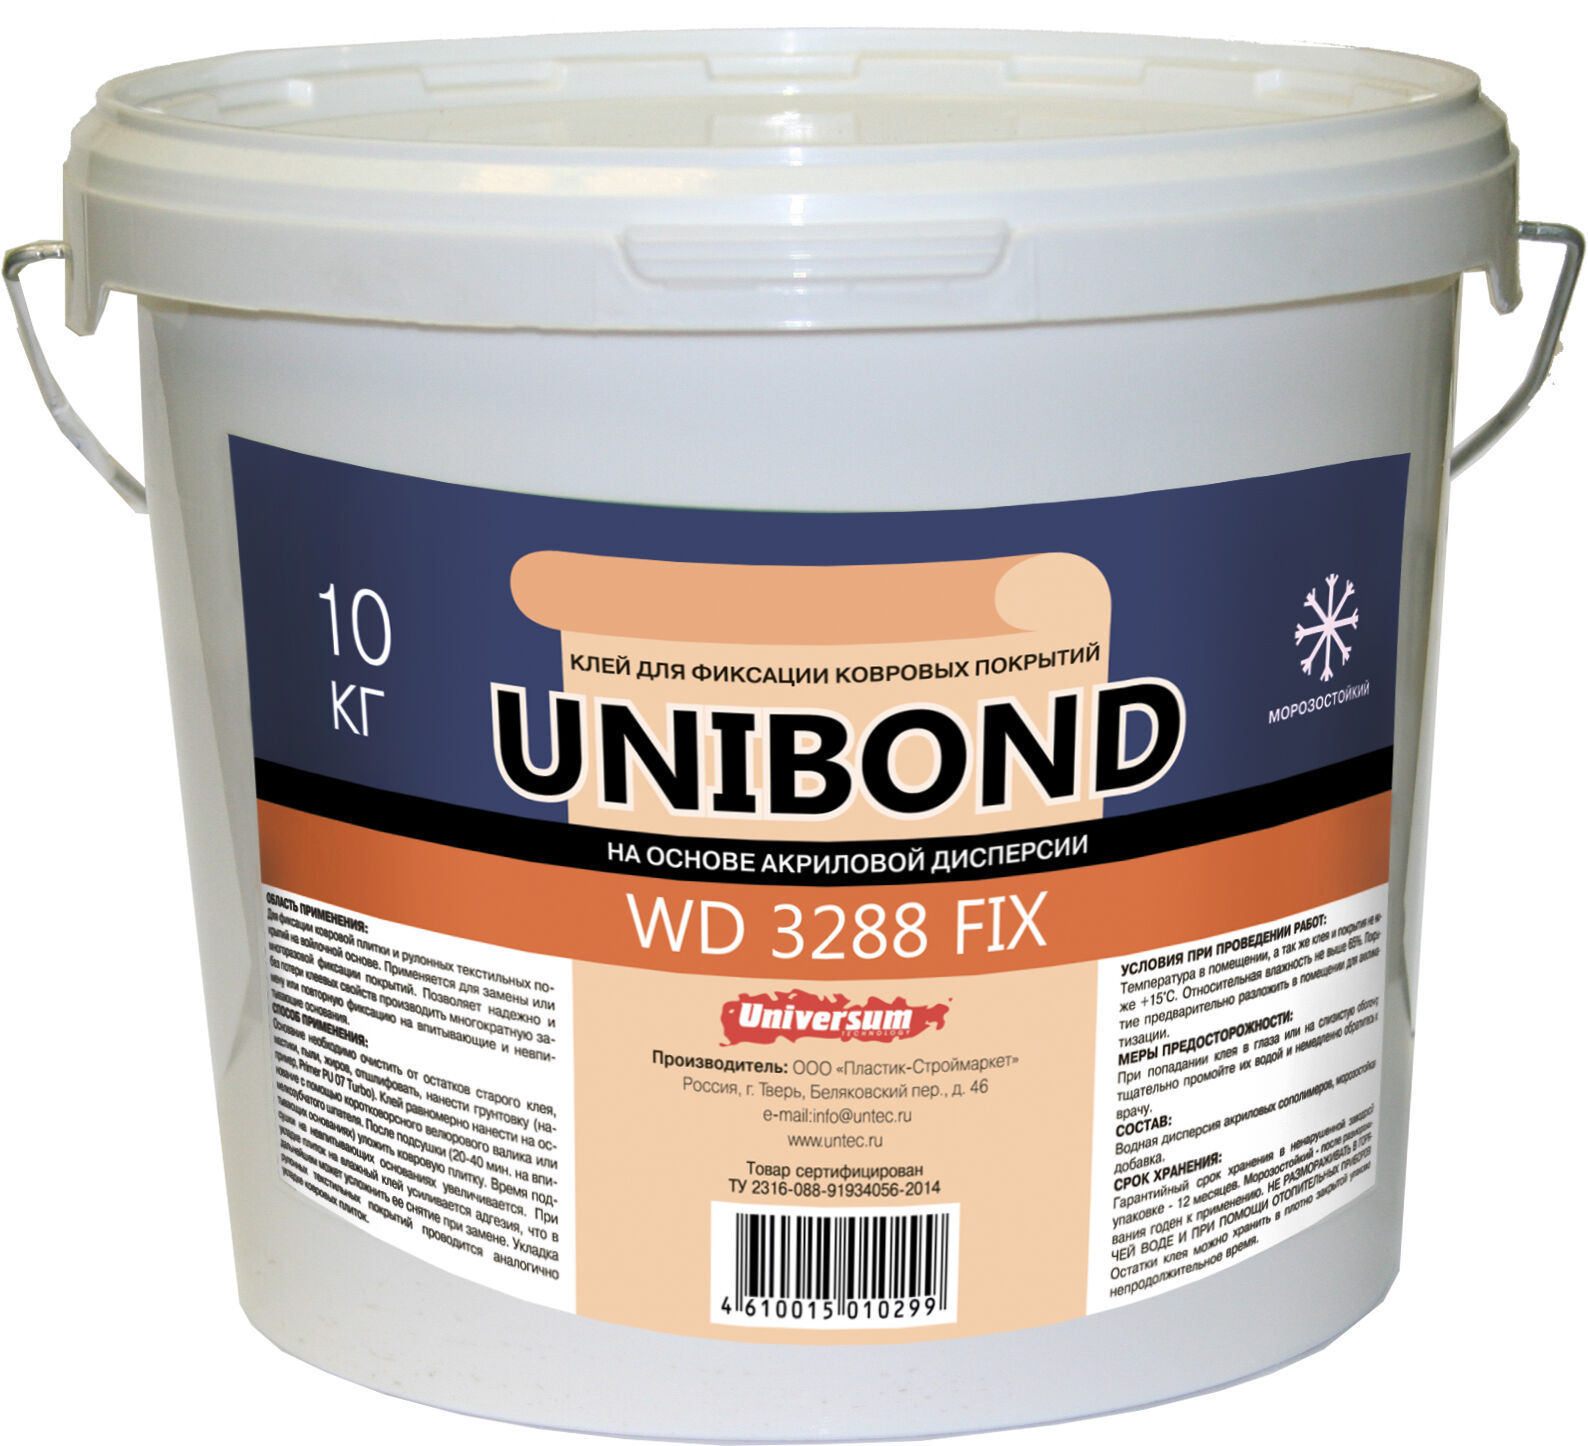 UNIBOND WD 3288 FIX Клей на основе акриловой дисперсии для ковровой плитки и рулонных текстильных покрытий